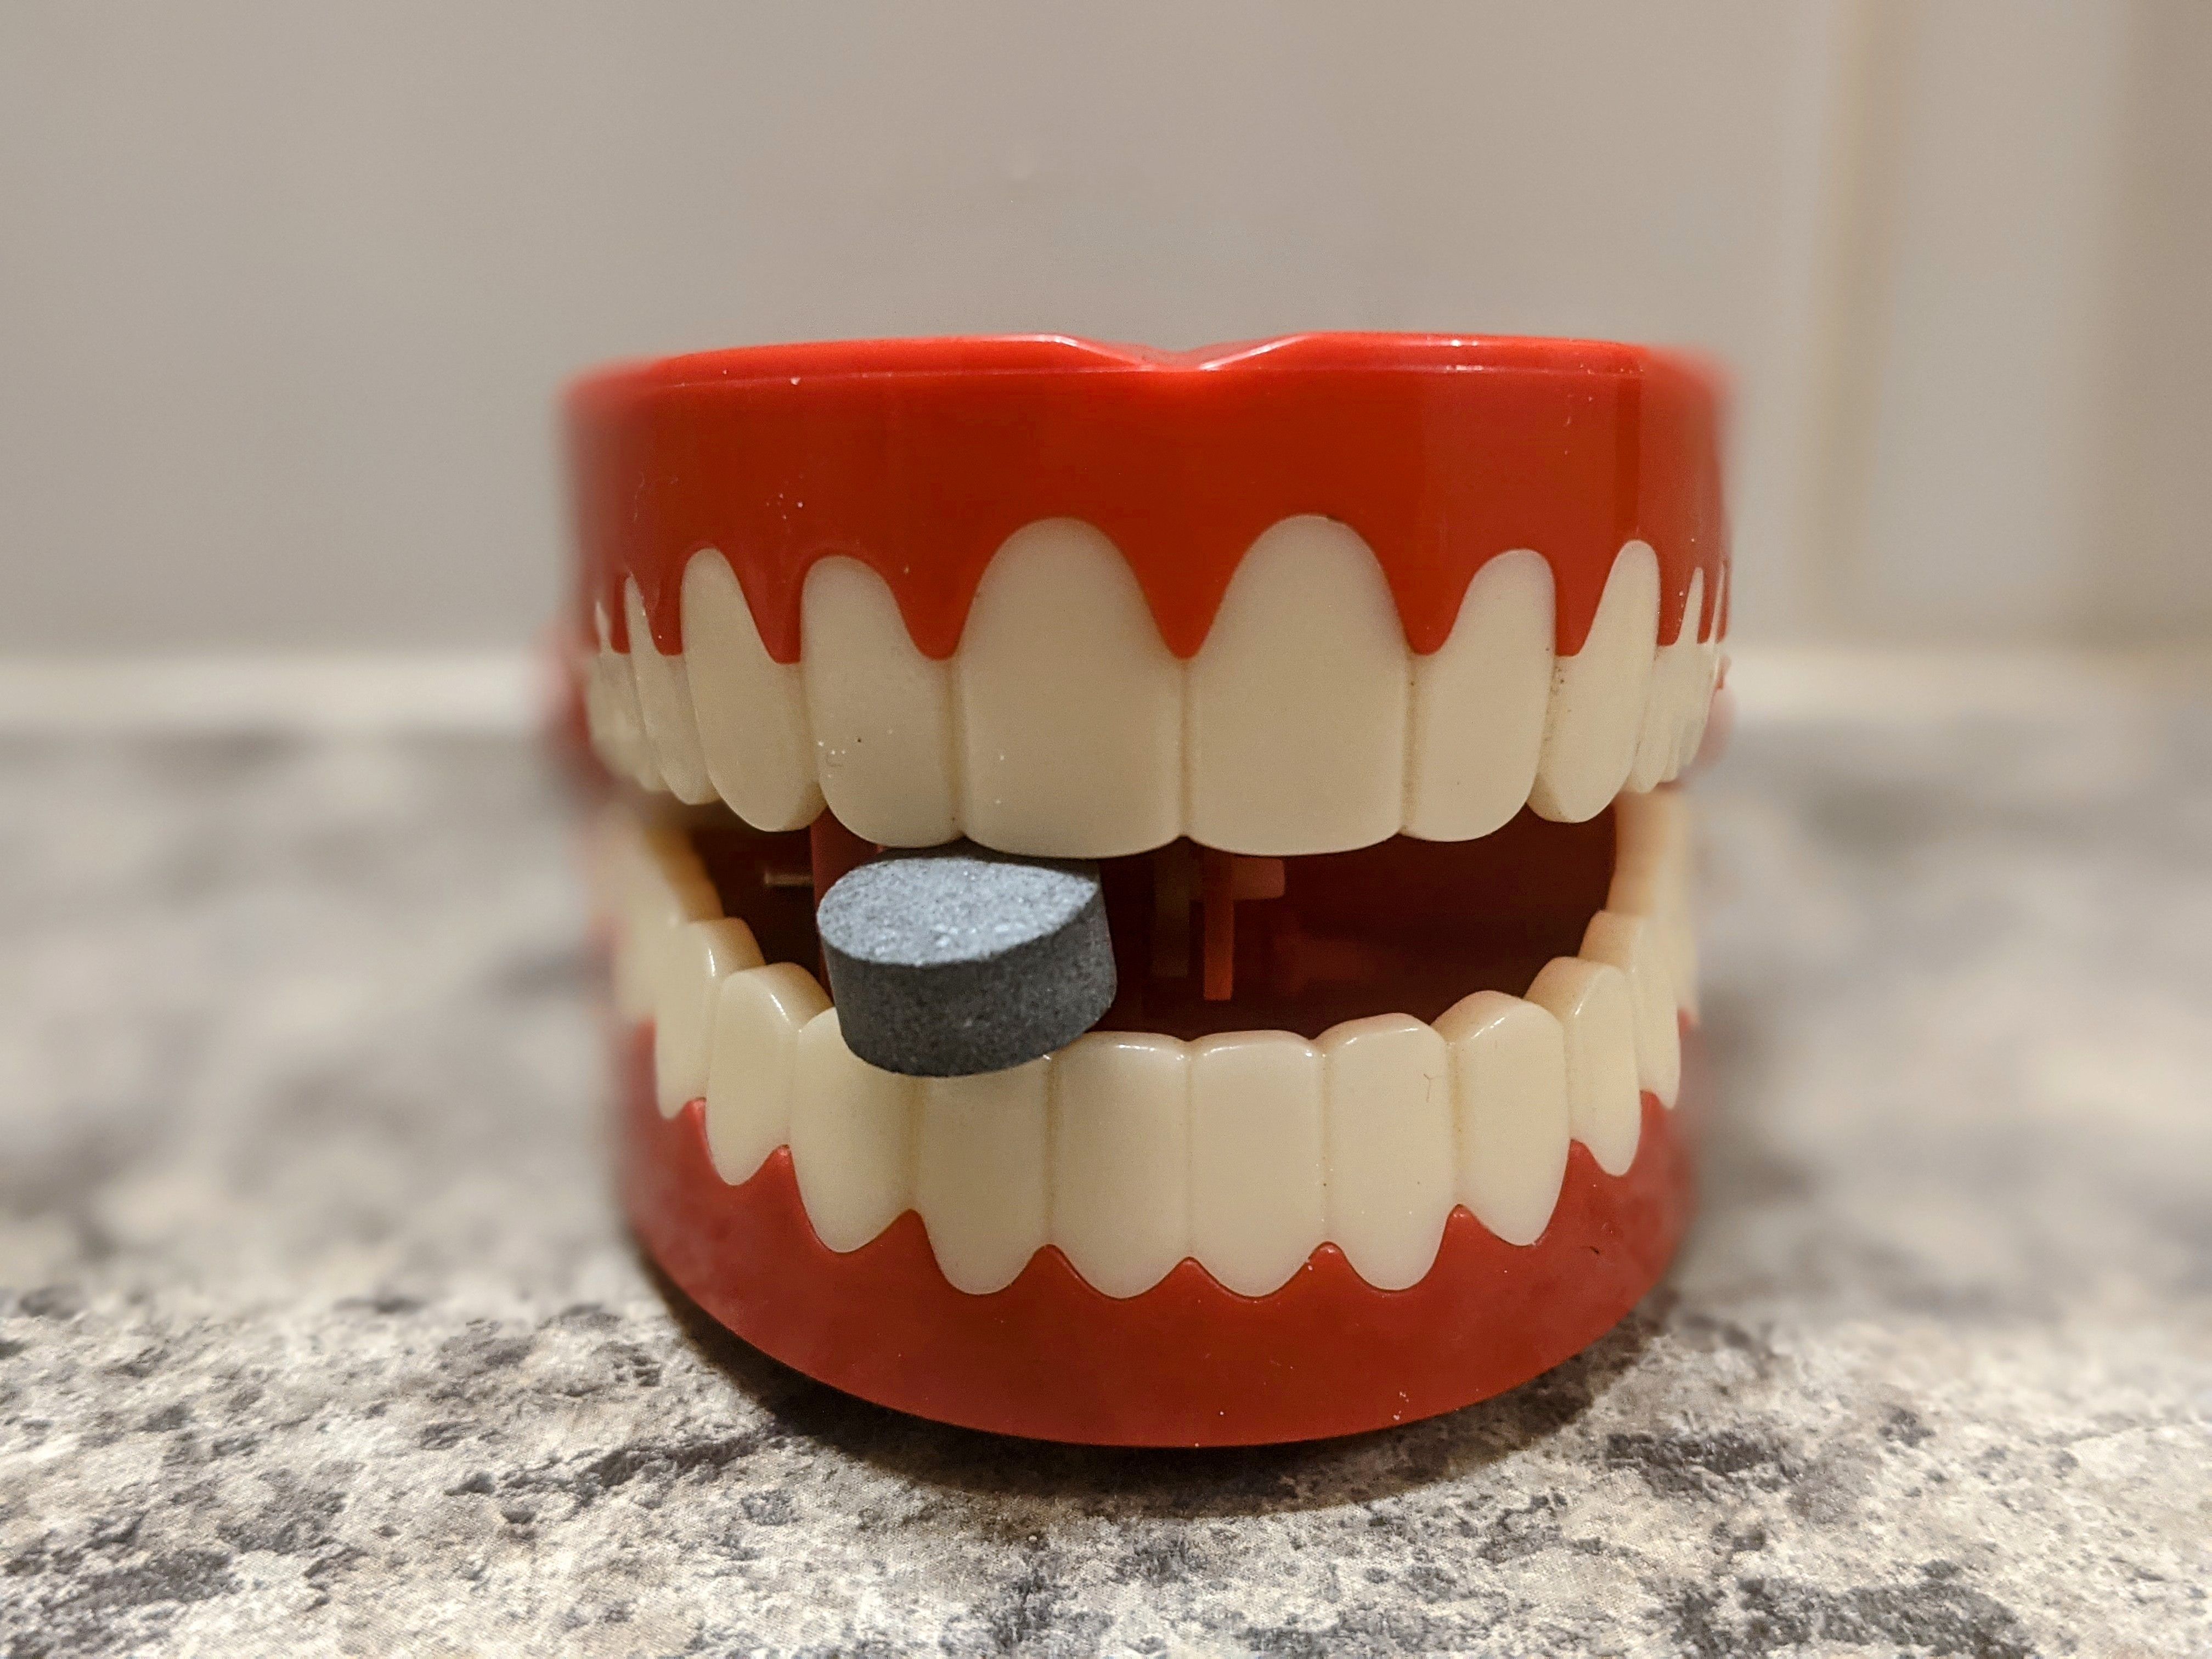 Plečiantis dantų žaislas su dantų pastos tablete tarp jų